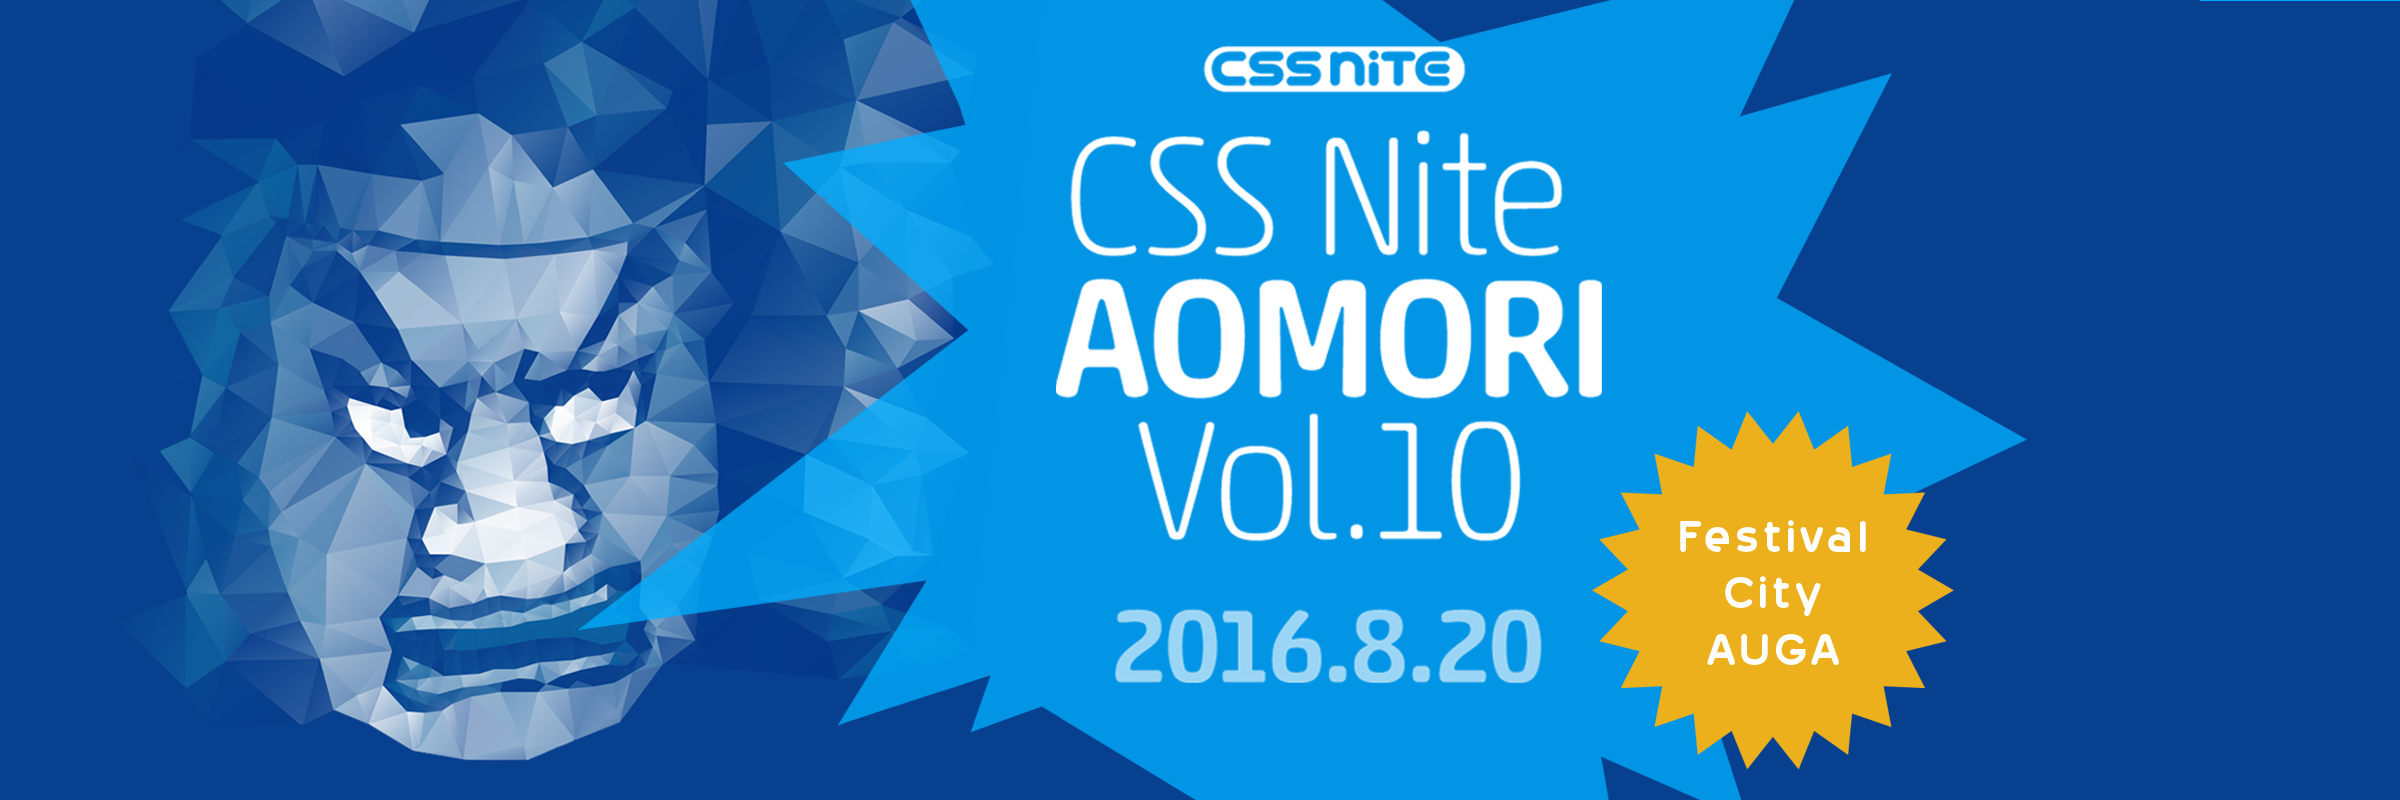 CSS Nite in AOMORI, Vol.10